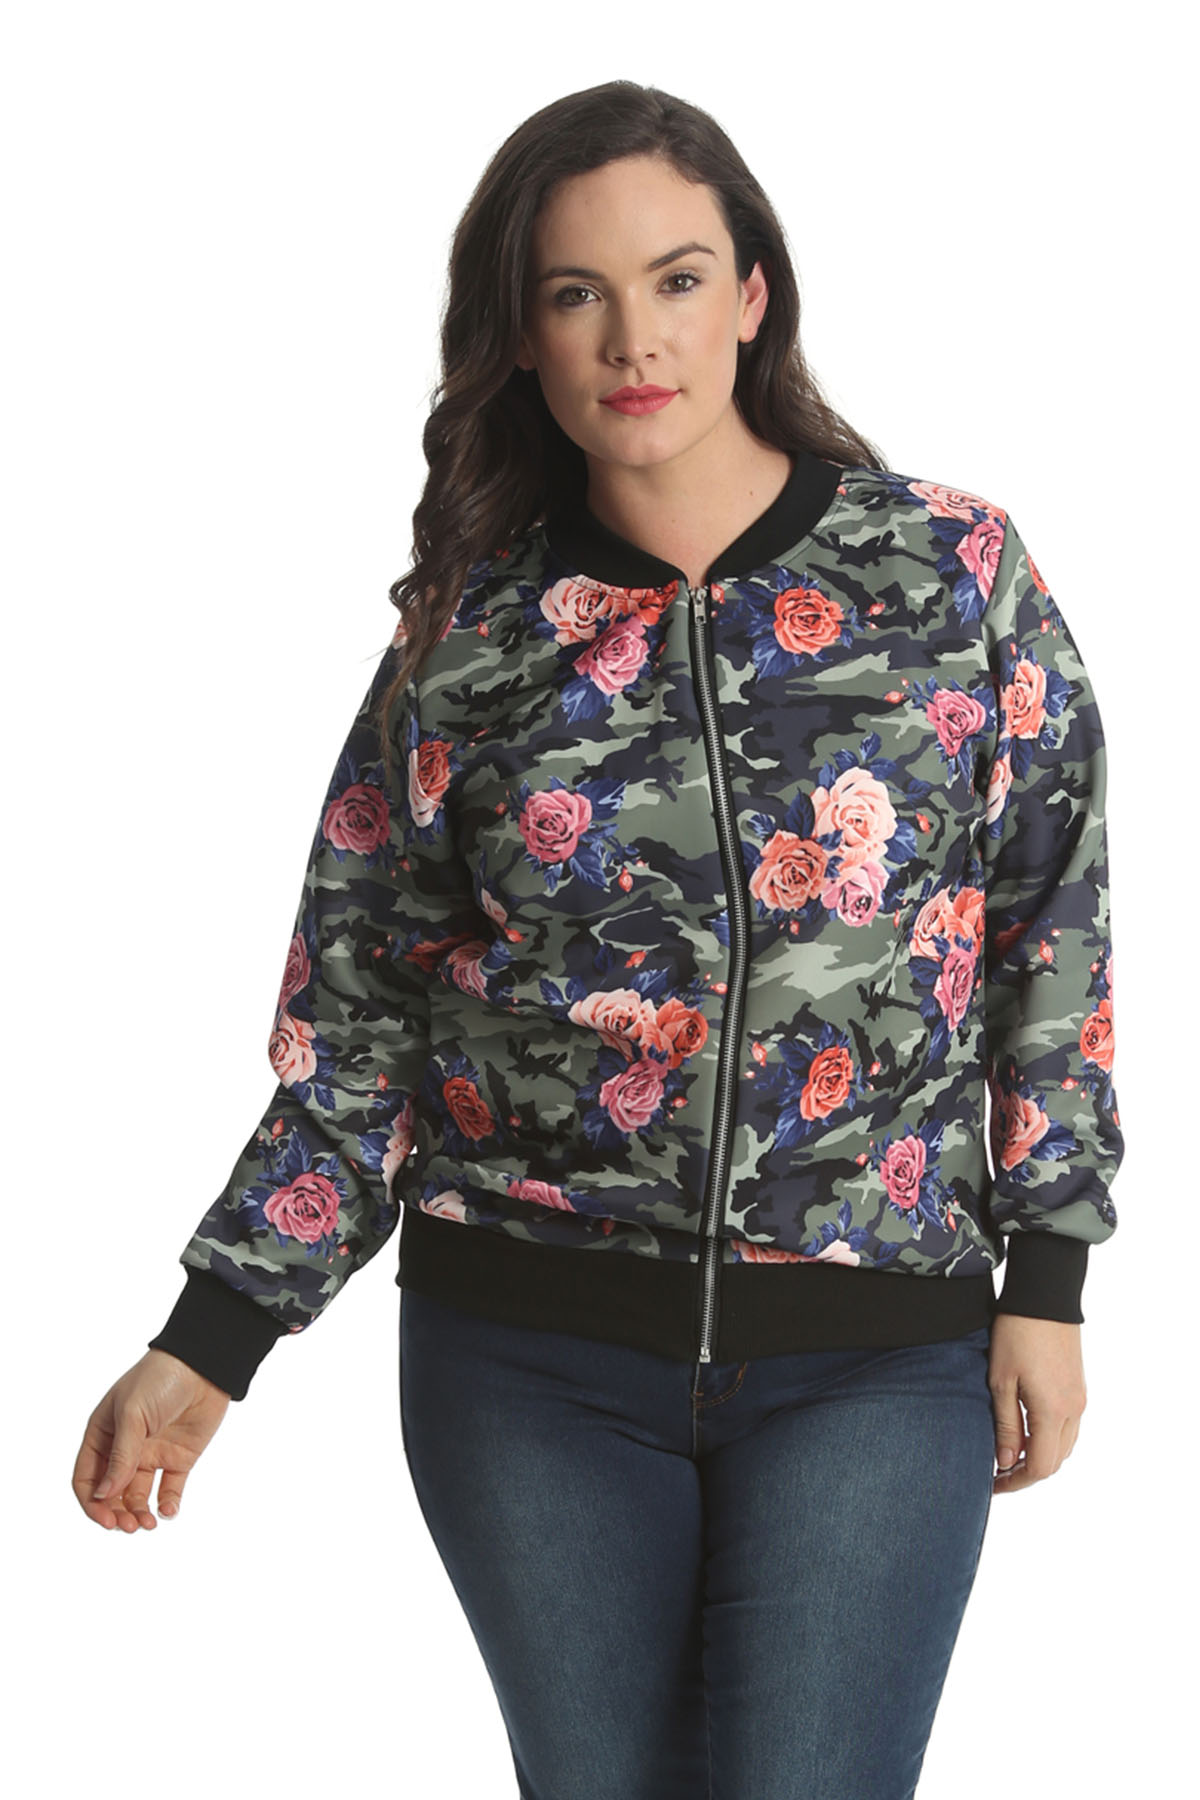 Nouvelle® Plus Size Women's Floral Print Bomber Jacket | eBay